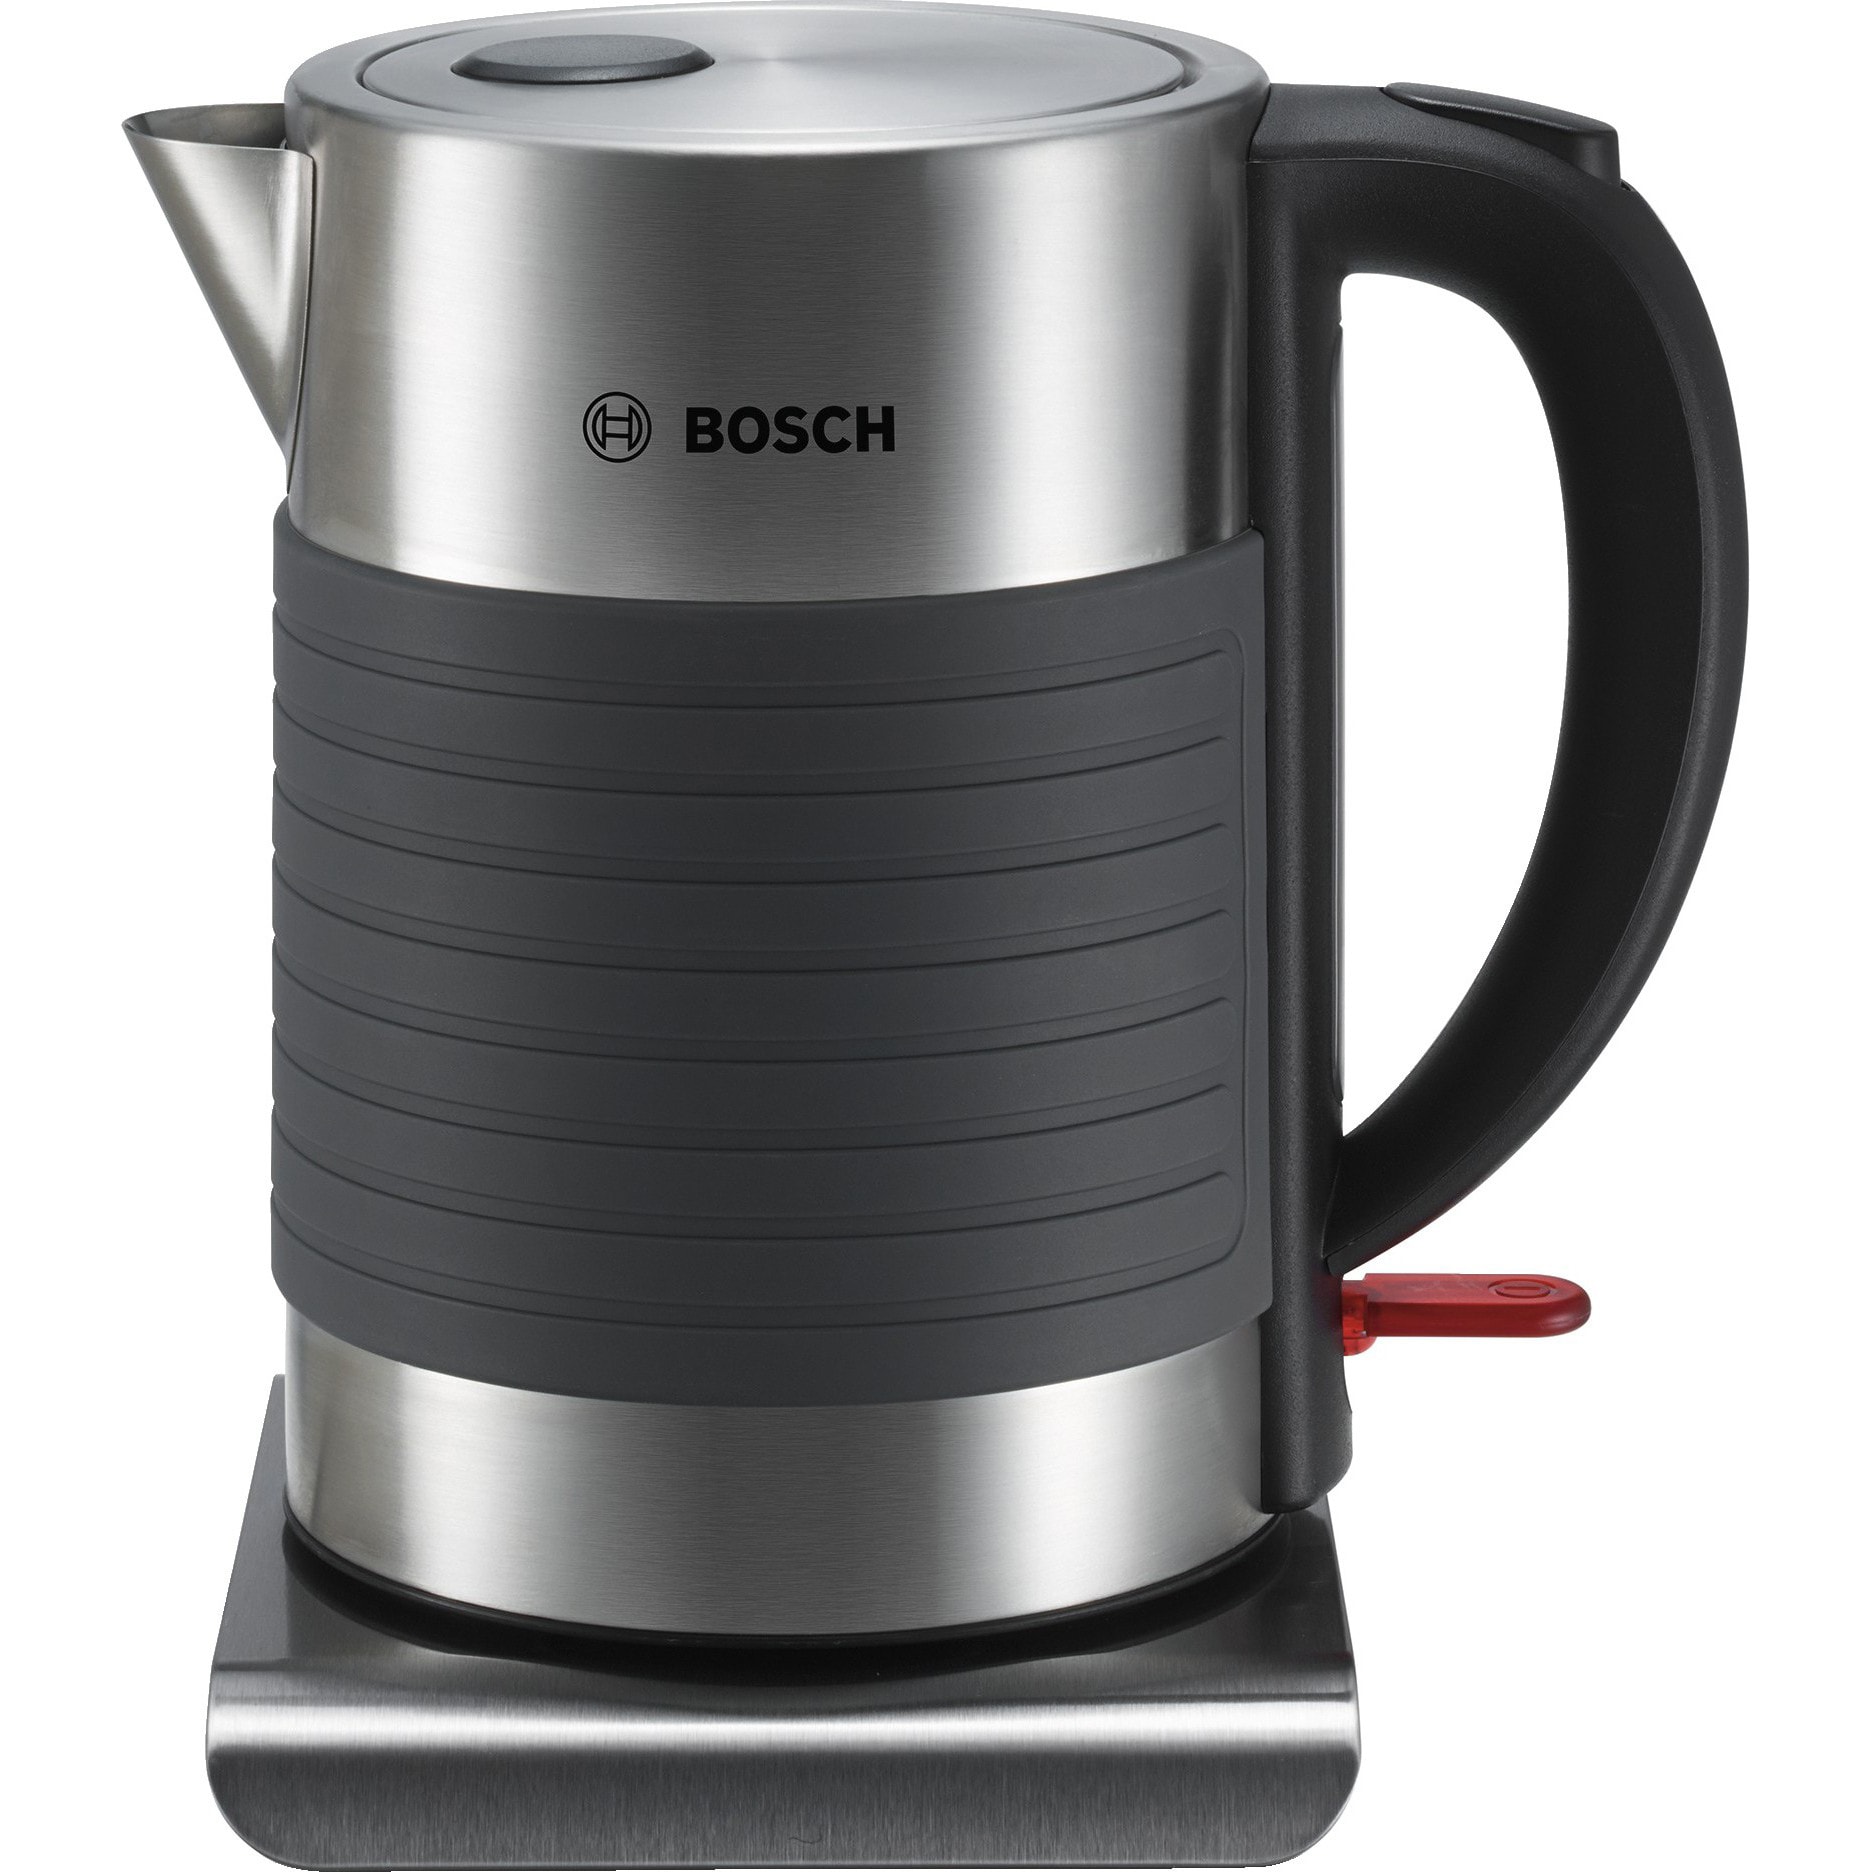 Bosch elkedel TWK7S05 - grå | Elgiganten